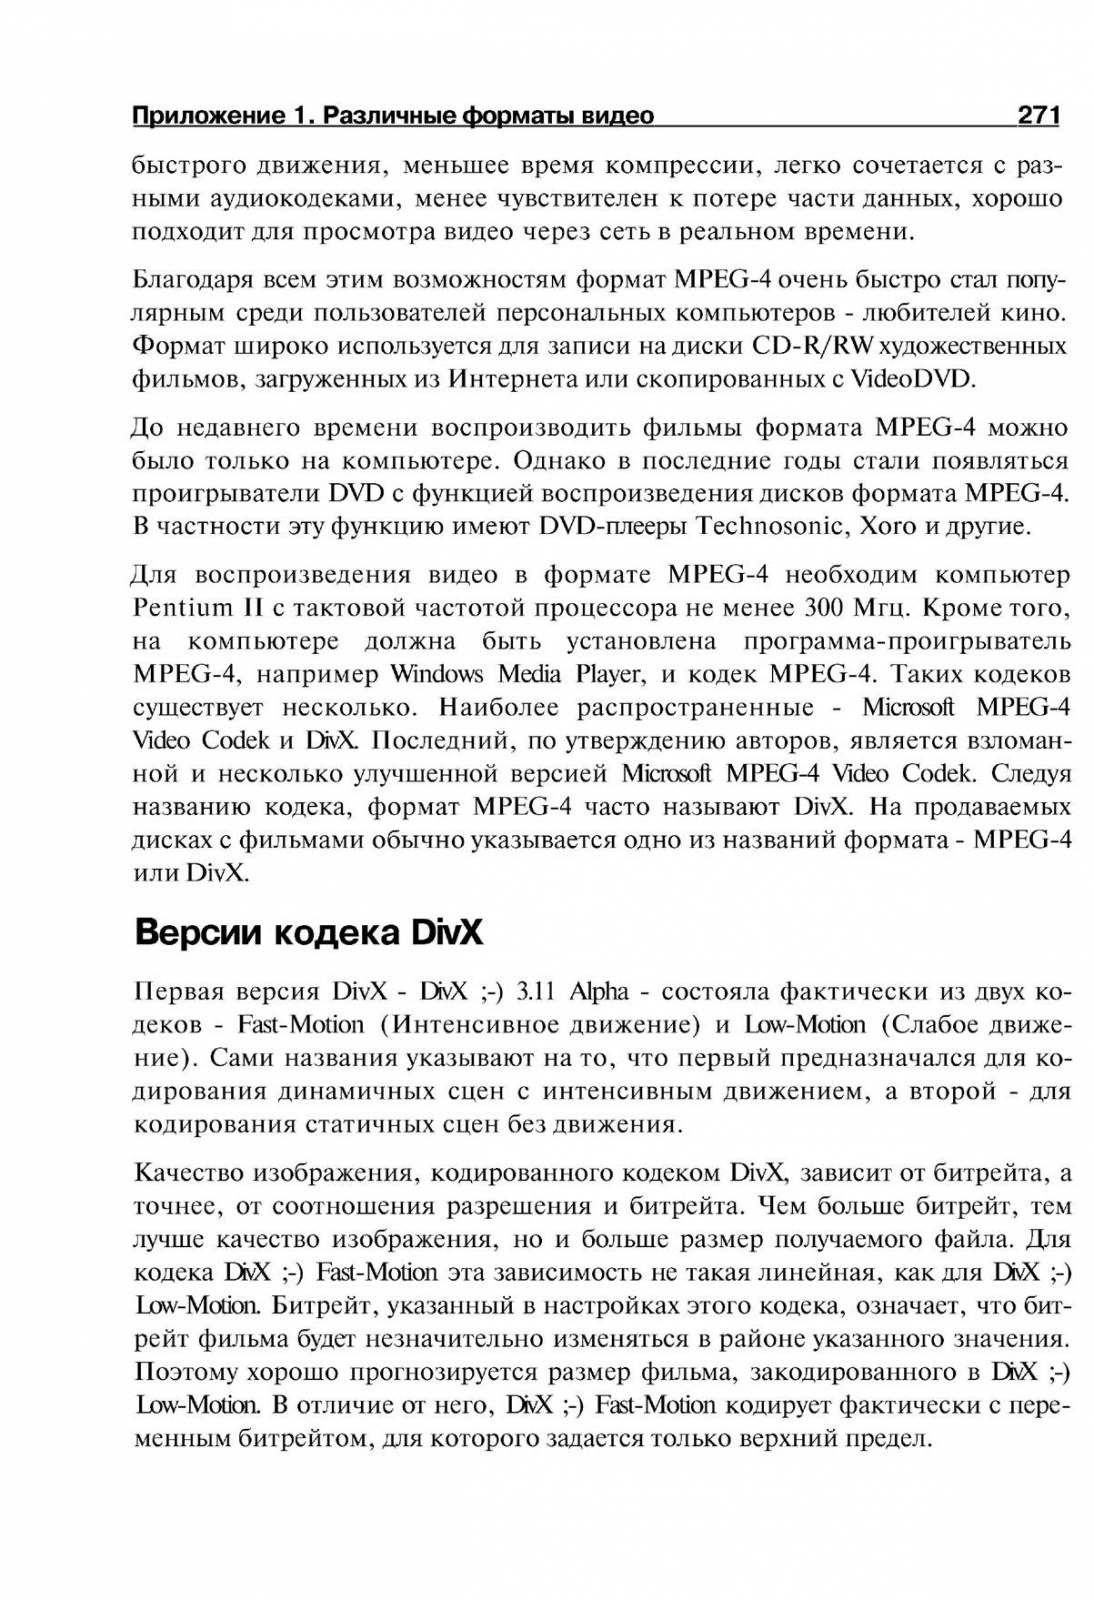 http://redaktori-uroki.3dn.ru/_ph/14/515390811.jpg